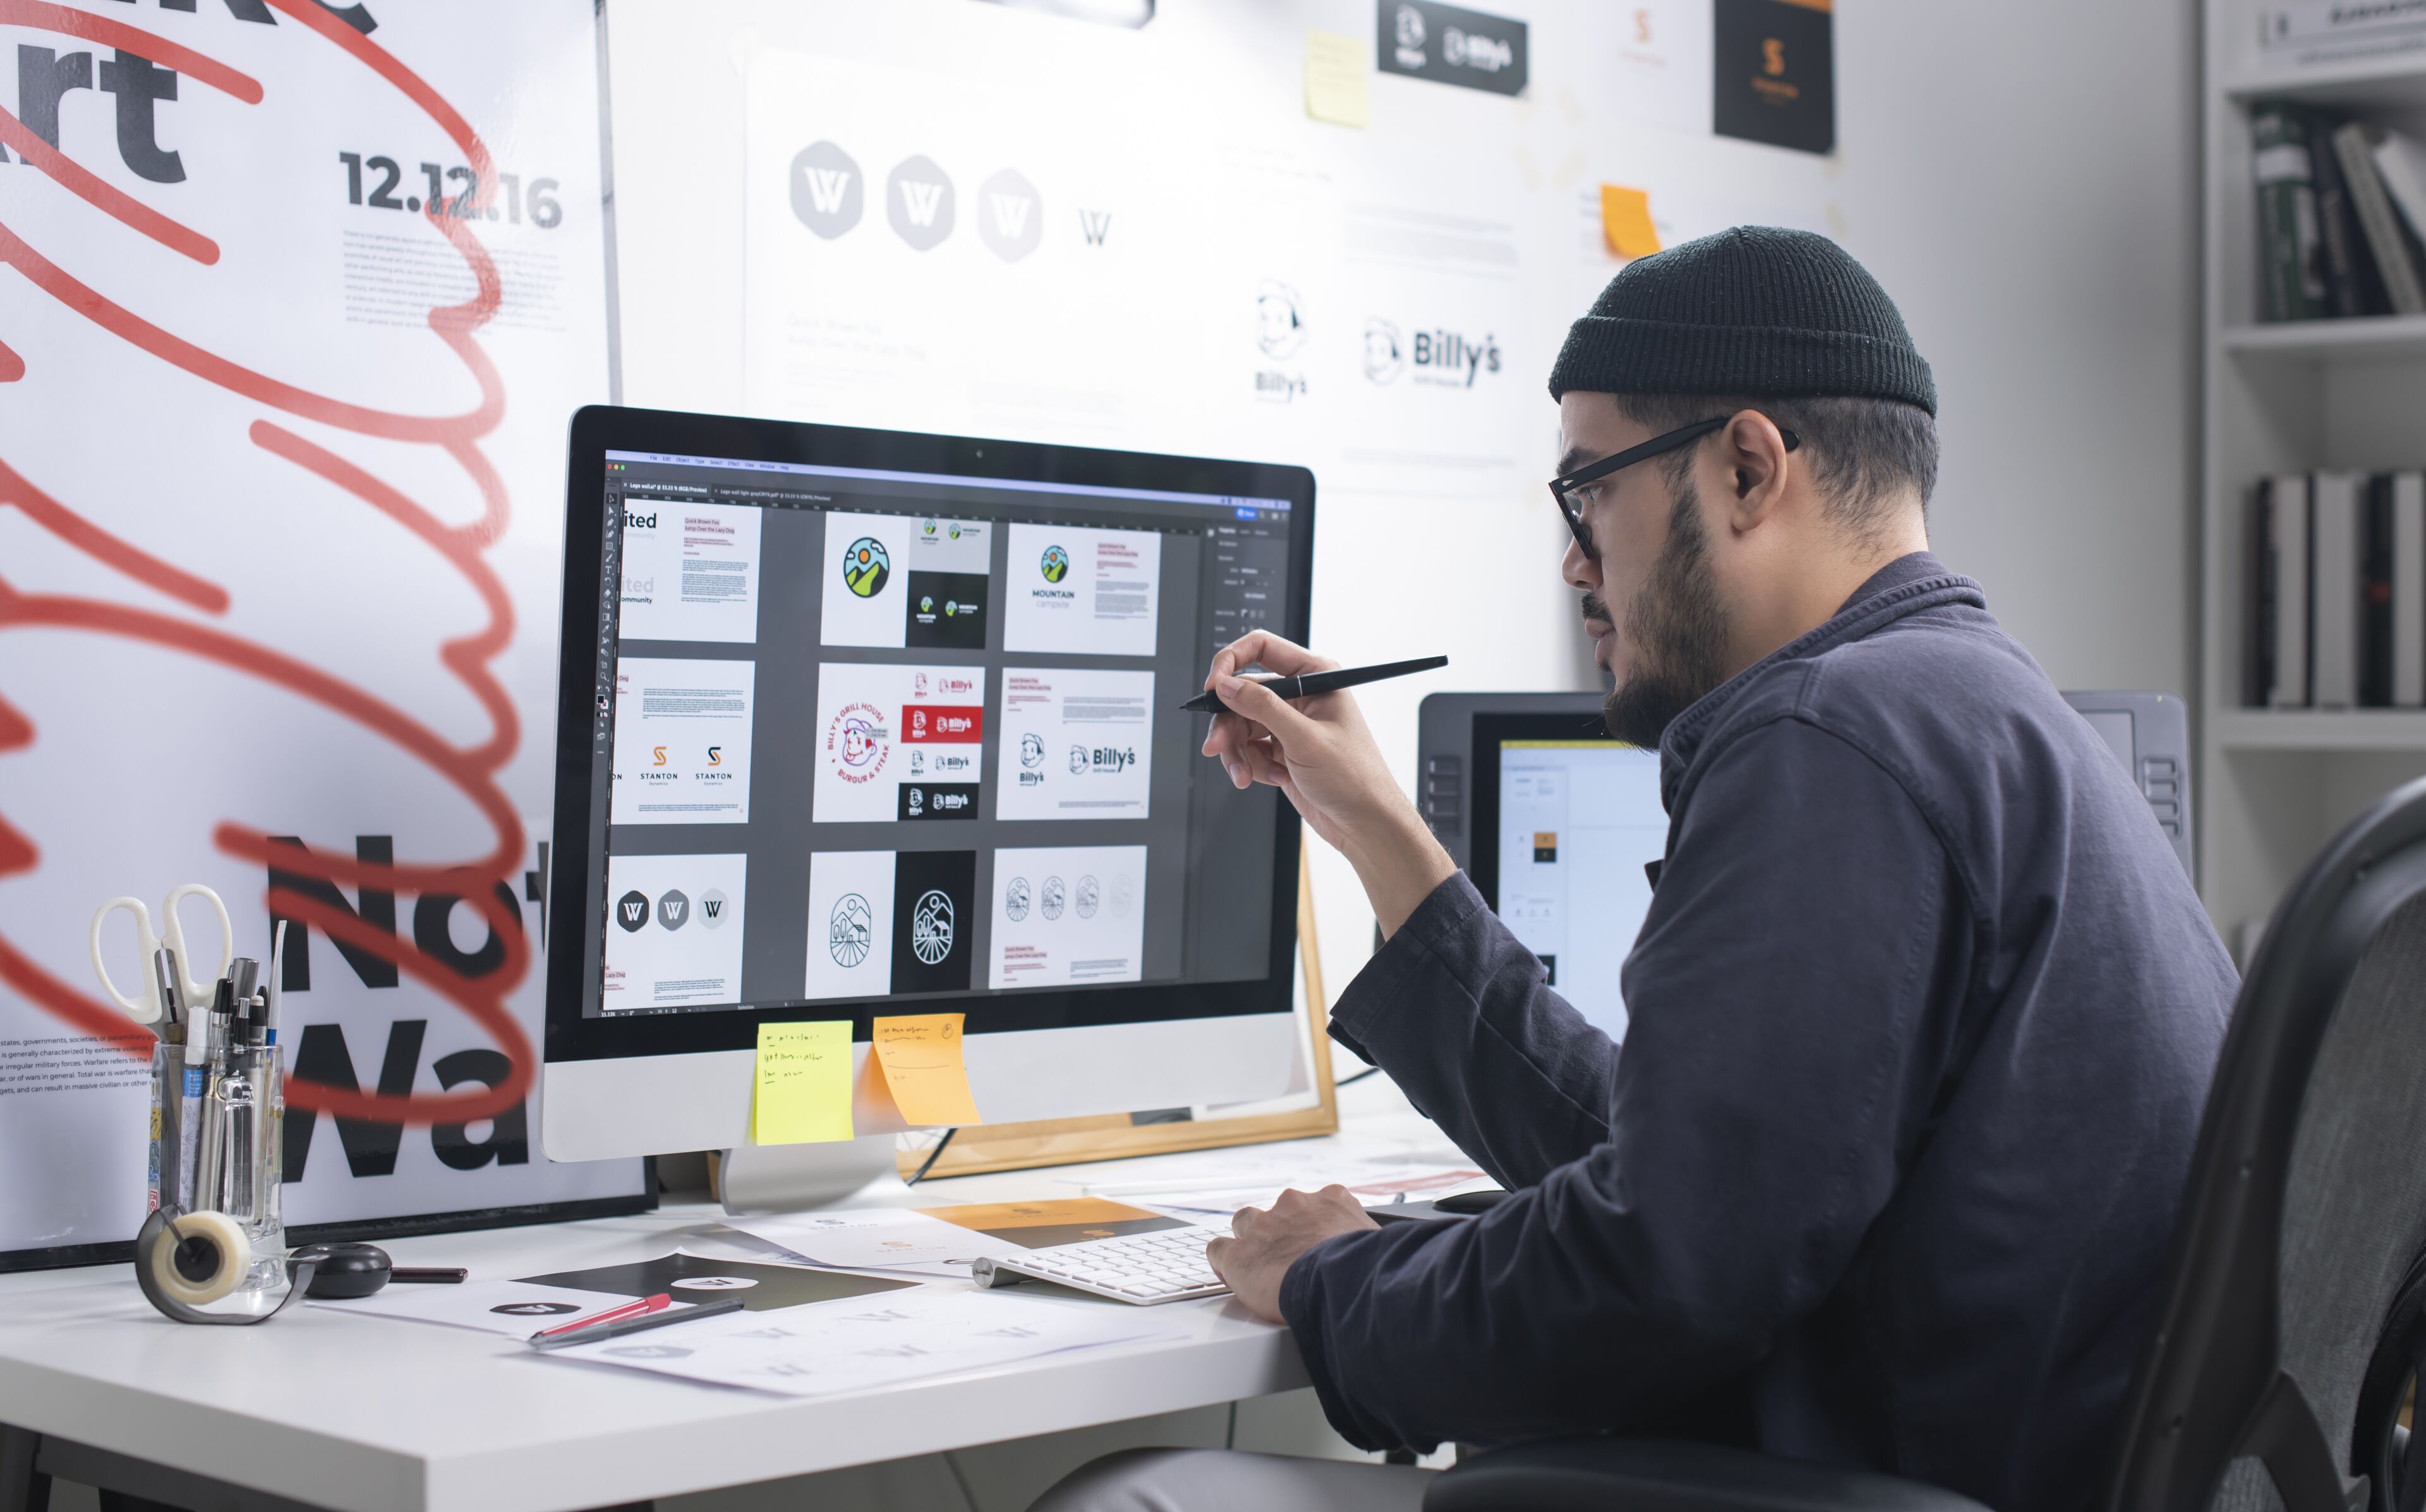 ImageUn graphiste masculin portant un bonnet examine des conceptions sur un grand écran, stylet en main, dans un espace de travail bien organisé.